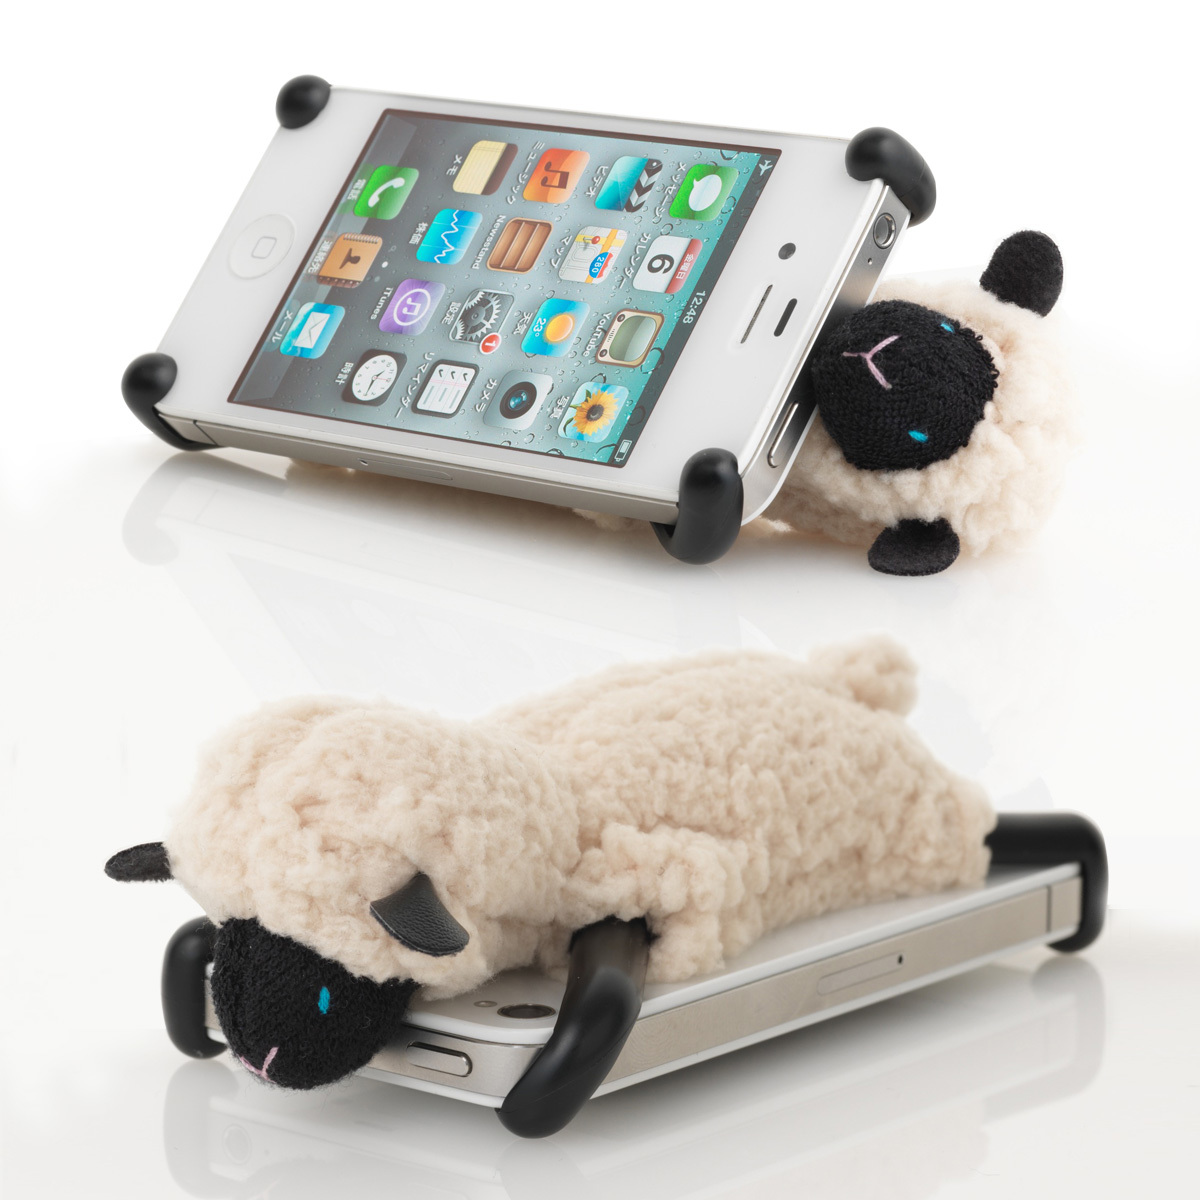 即決 アウトレット品 SHEEPY for iPhone 5/5s/5c IVアイボリー